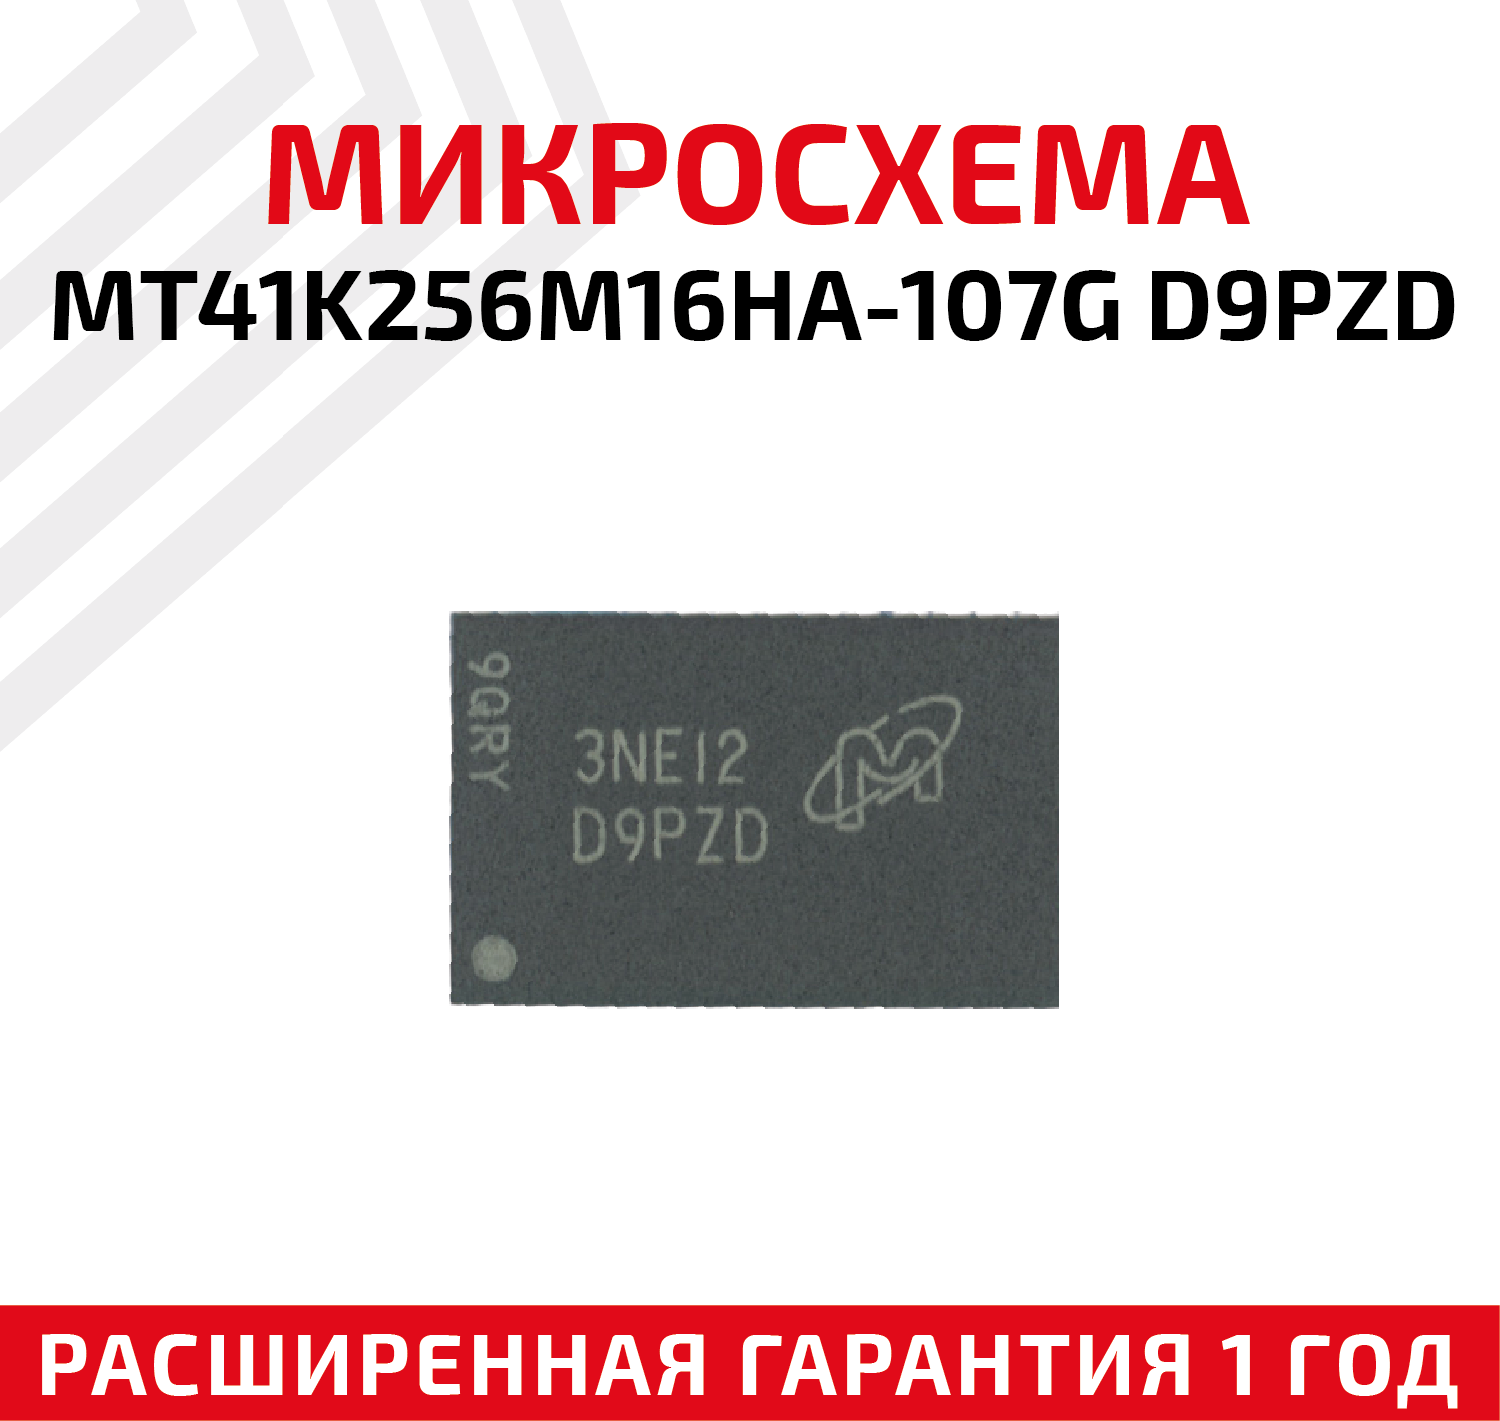 Микросхема оперативной памяти Micron MT41K256M16HA-107G D9PZD